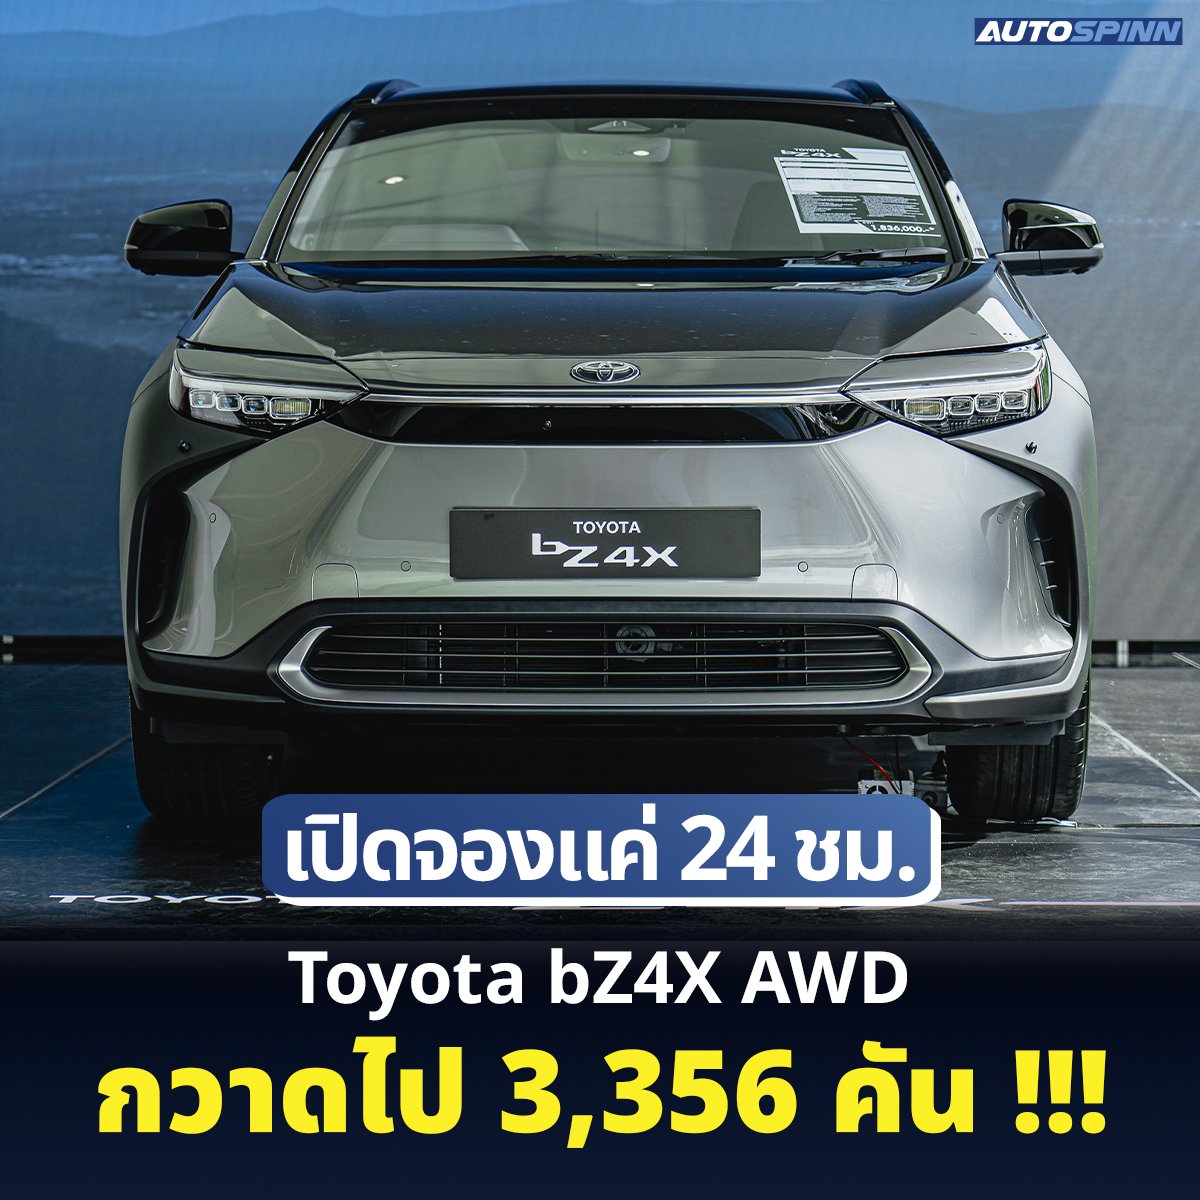 Toyota bZ4X AWD รถยนต์ไฟฟ้ารุ่นแรกจากโตโยต้า กวาดยอดจองภายใน 24 ชั่วโมงไปได้มากถึง 3,356 คัน โดยชั่วโมงแรกของการเปิดจอง ทำยอดไปได้มากถึง 1,064 คัน